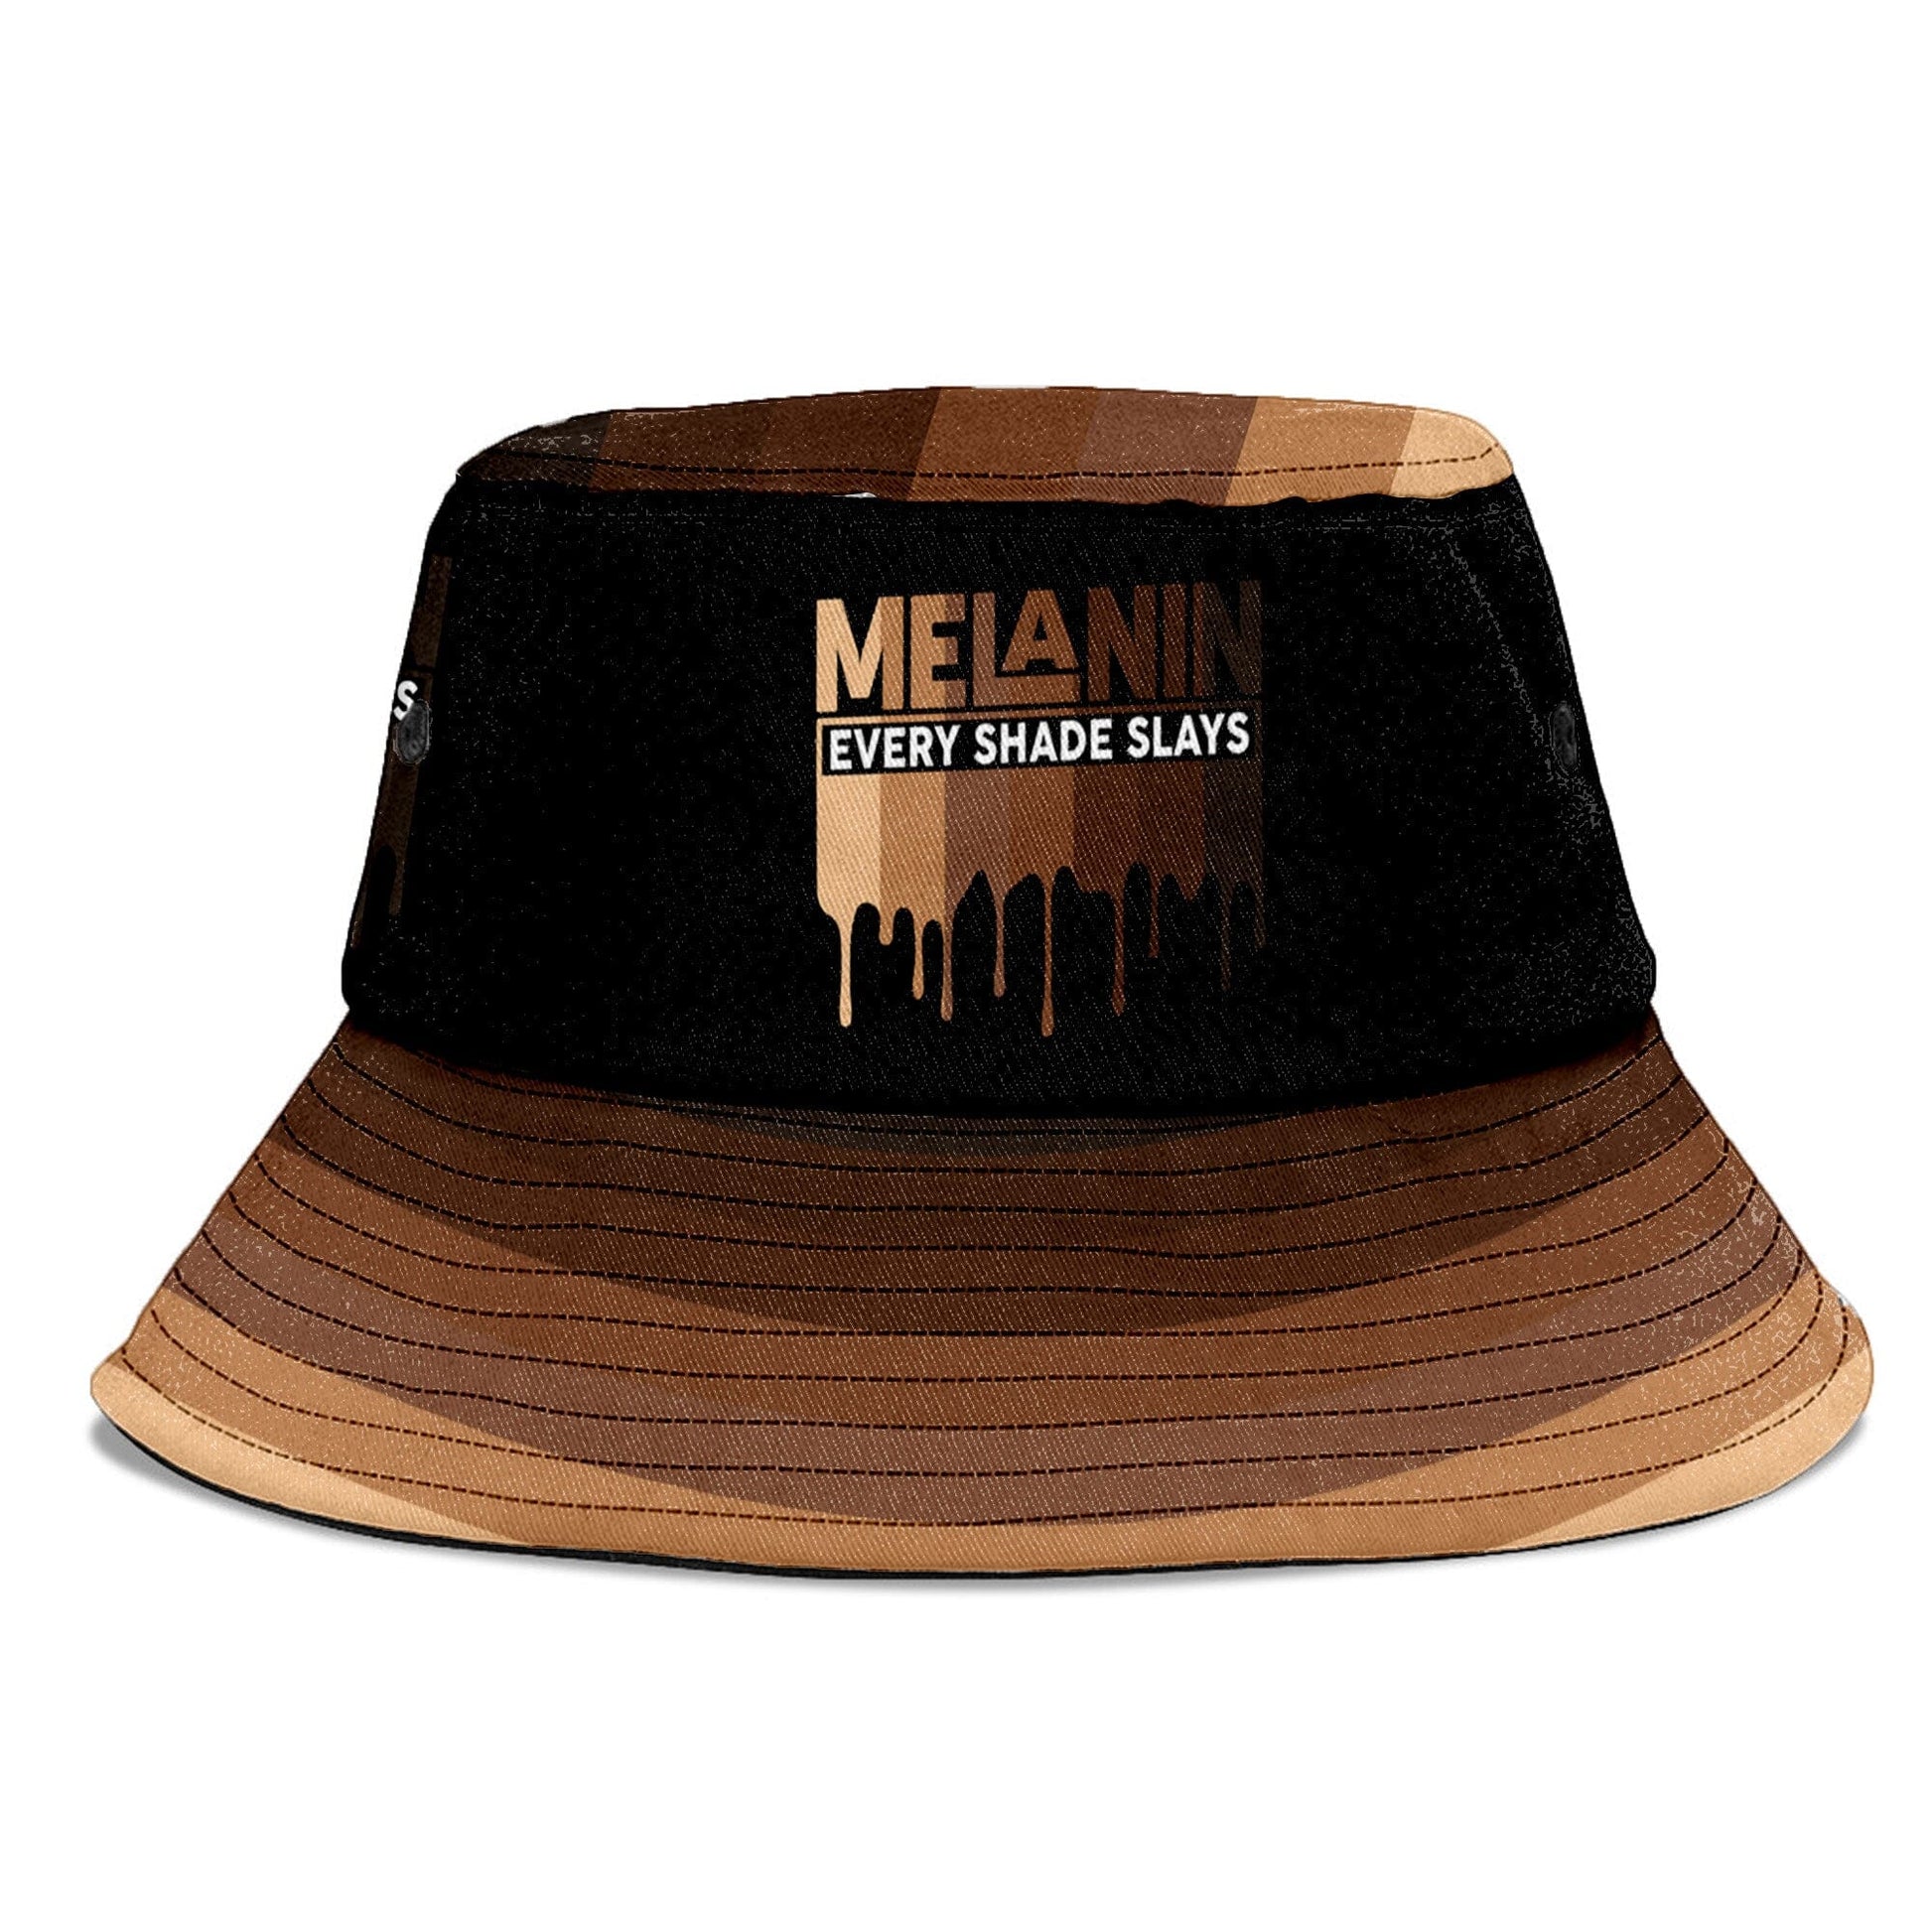 Every Shade Slays Melanin Bucket Hat Bucket Hat Tianci 